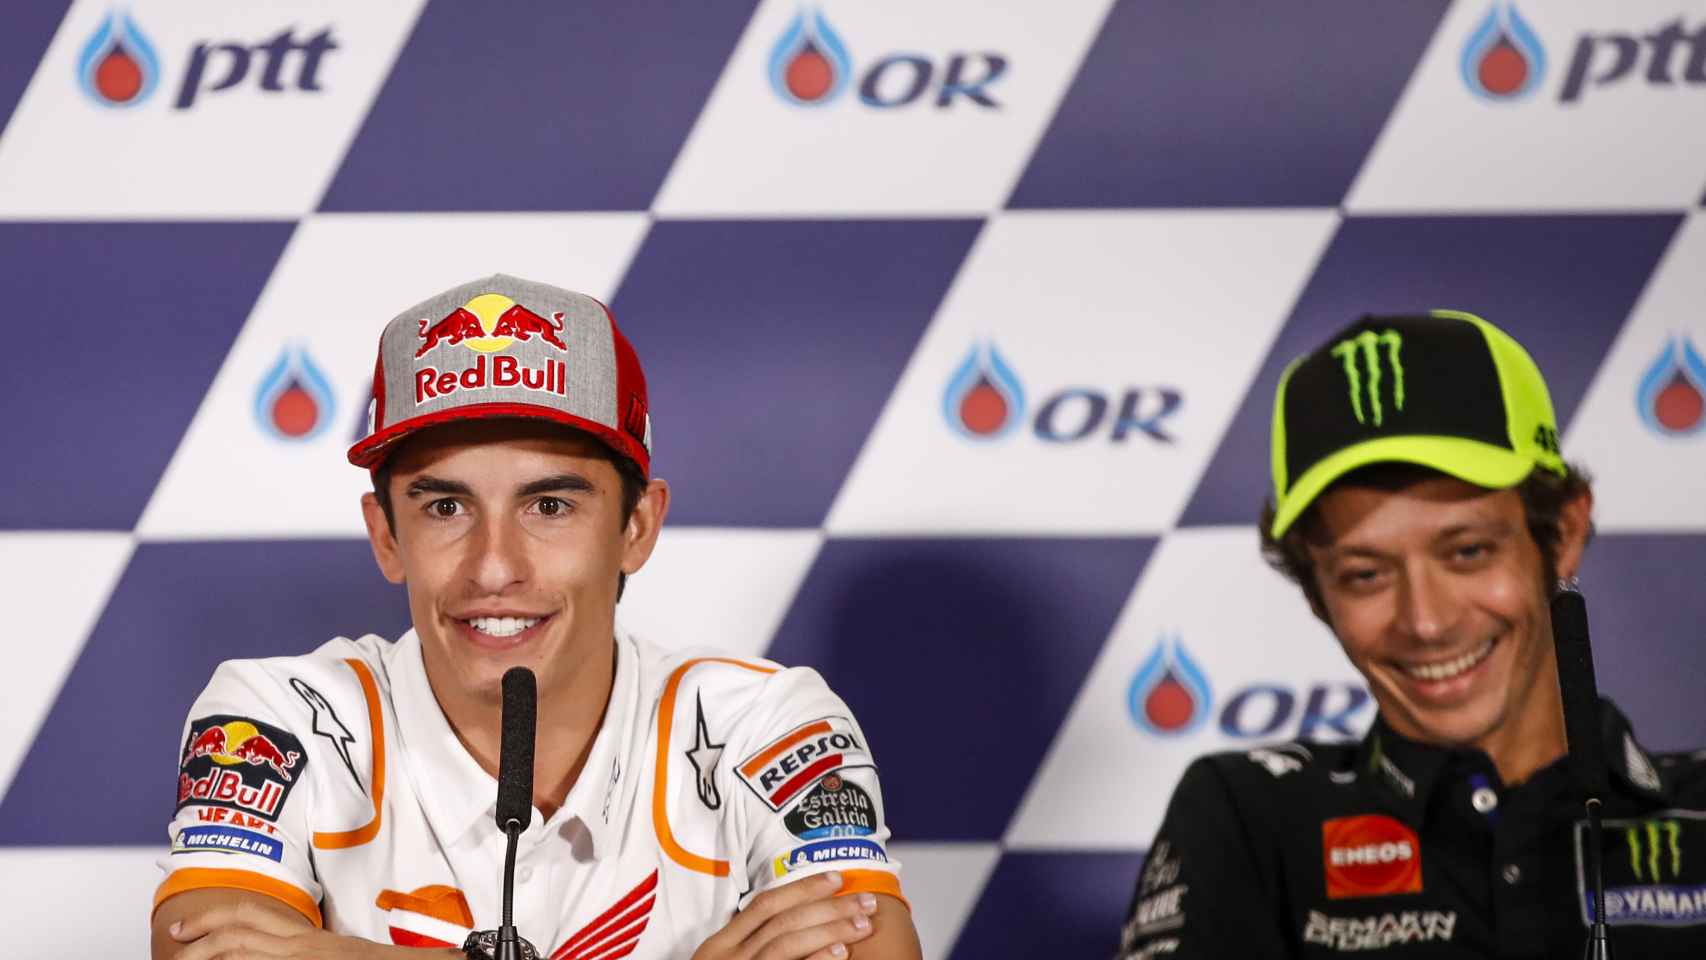 Márquez, junto a Rossi, durante la conferencia de prensa del Gran Premio de Tailandia.